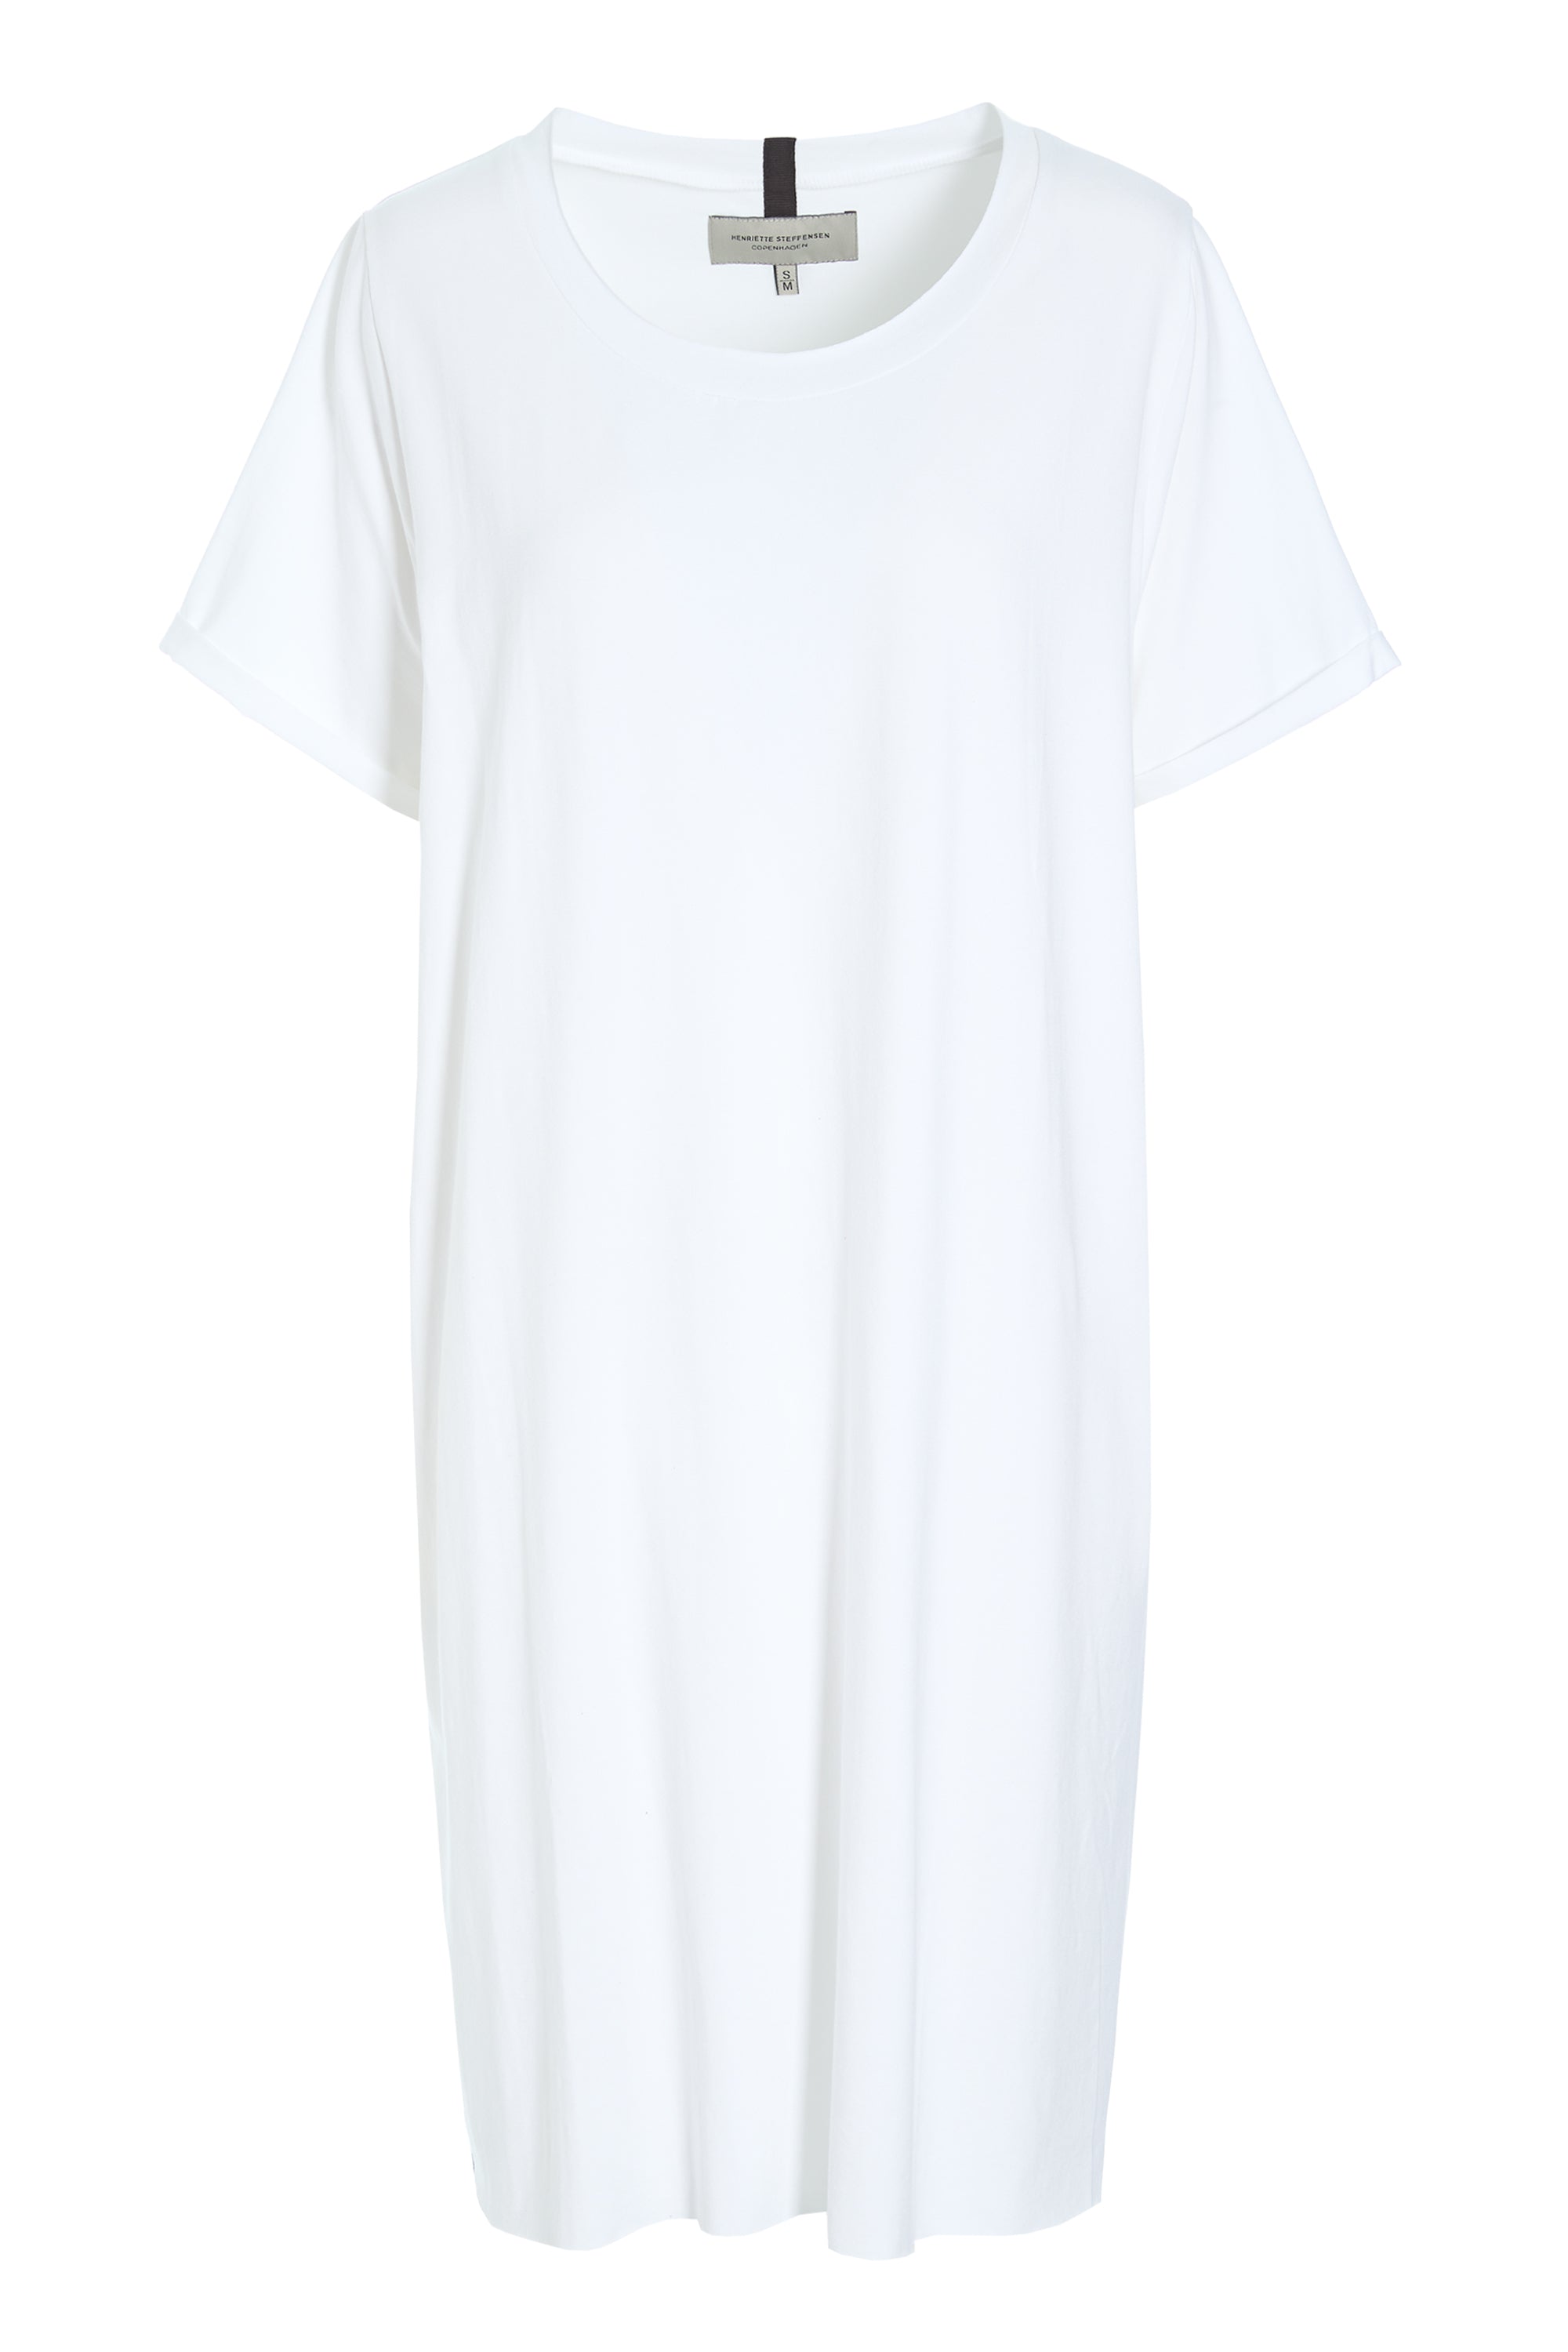 HENRIETTE STEFFENSEN COPENHAGEN KLEID - 98050 DRESSES jersey WHITE 816